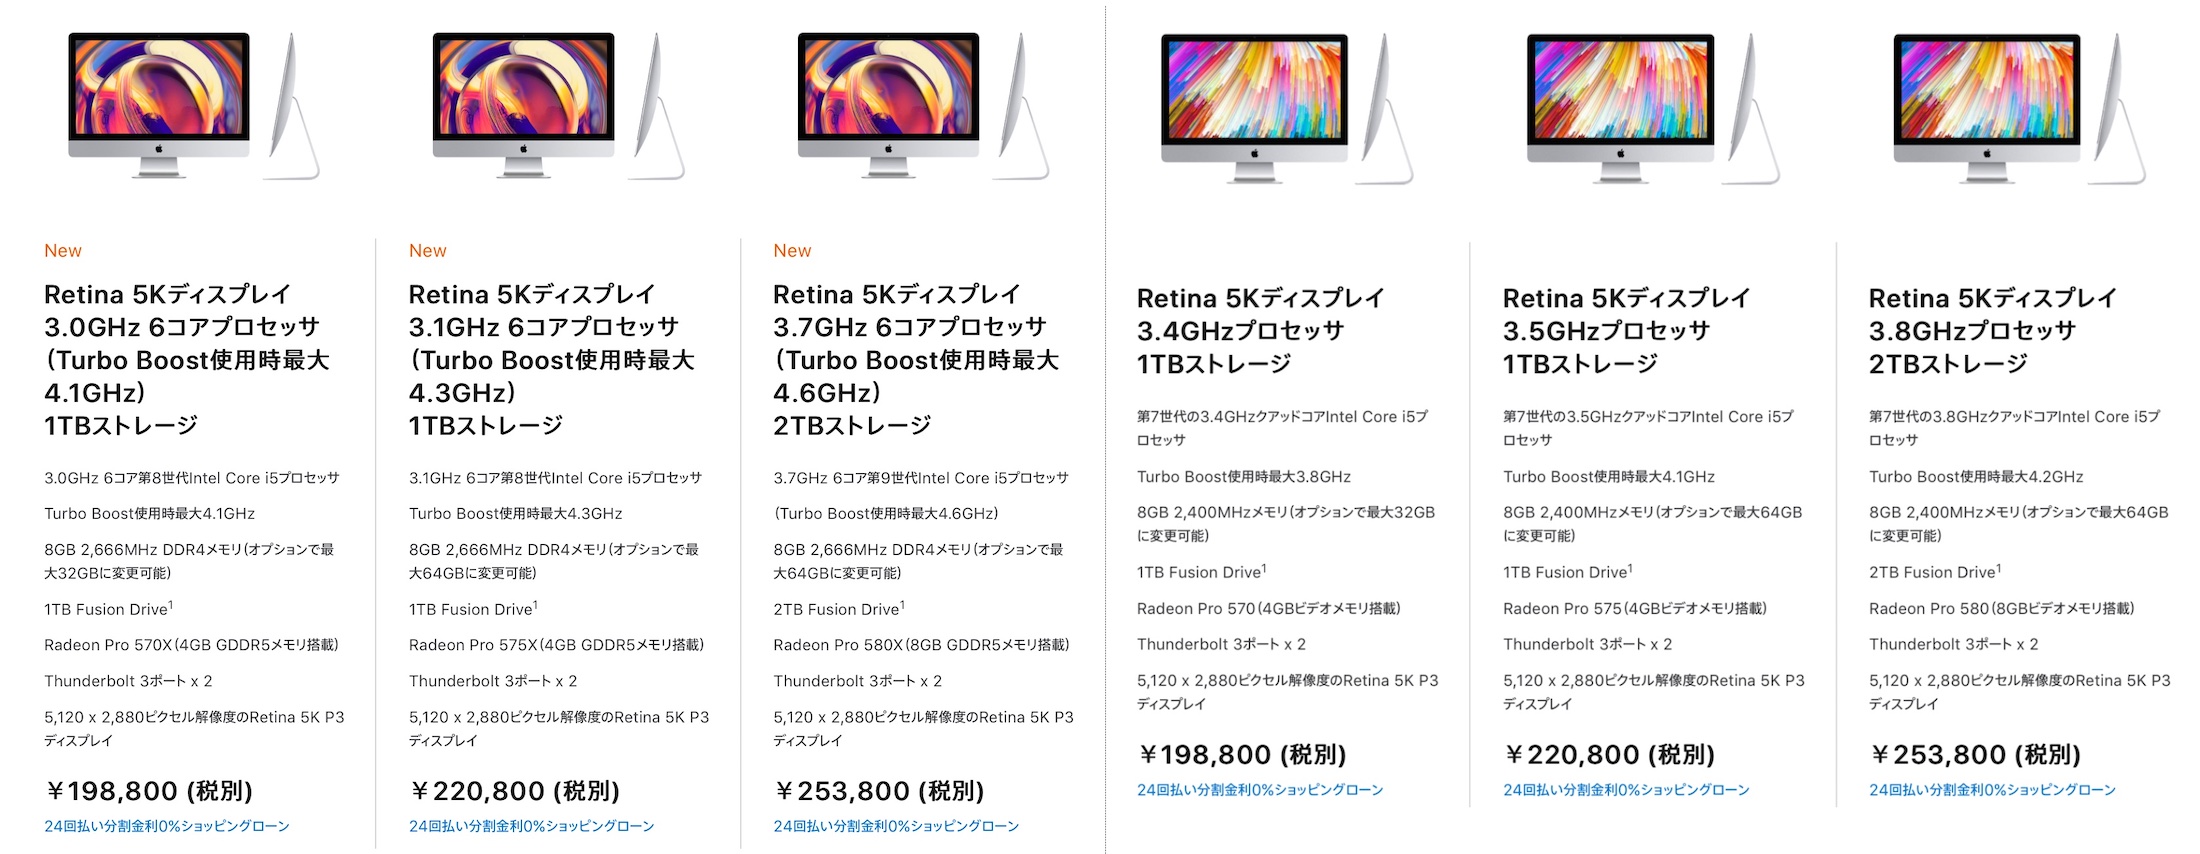 iMac 27インチ 2019/2017のベース構成価格